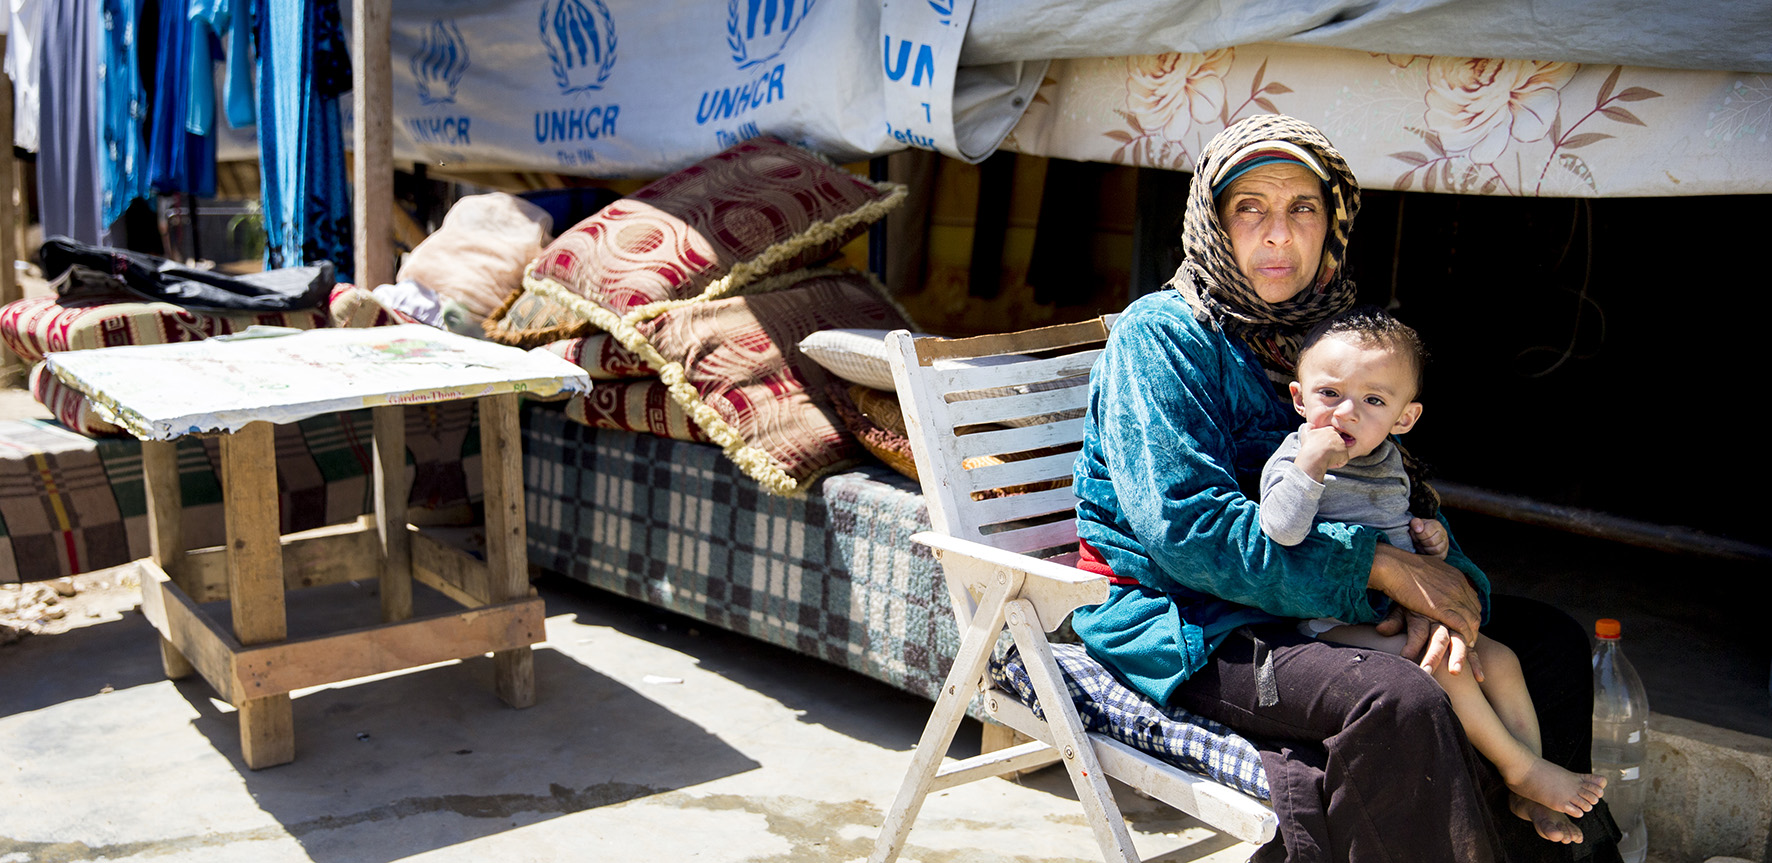 Op deze foto zie je een Syrische vluchtelinge met haar kind op schoot voor een tent.